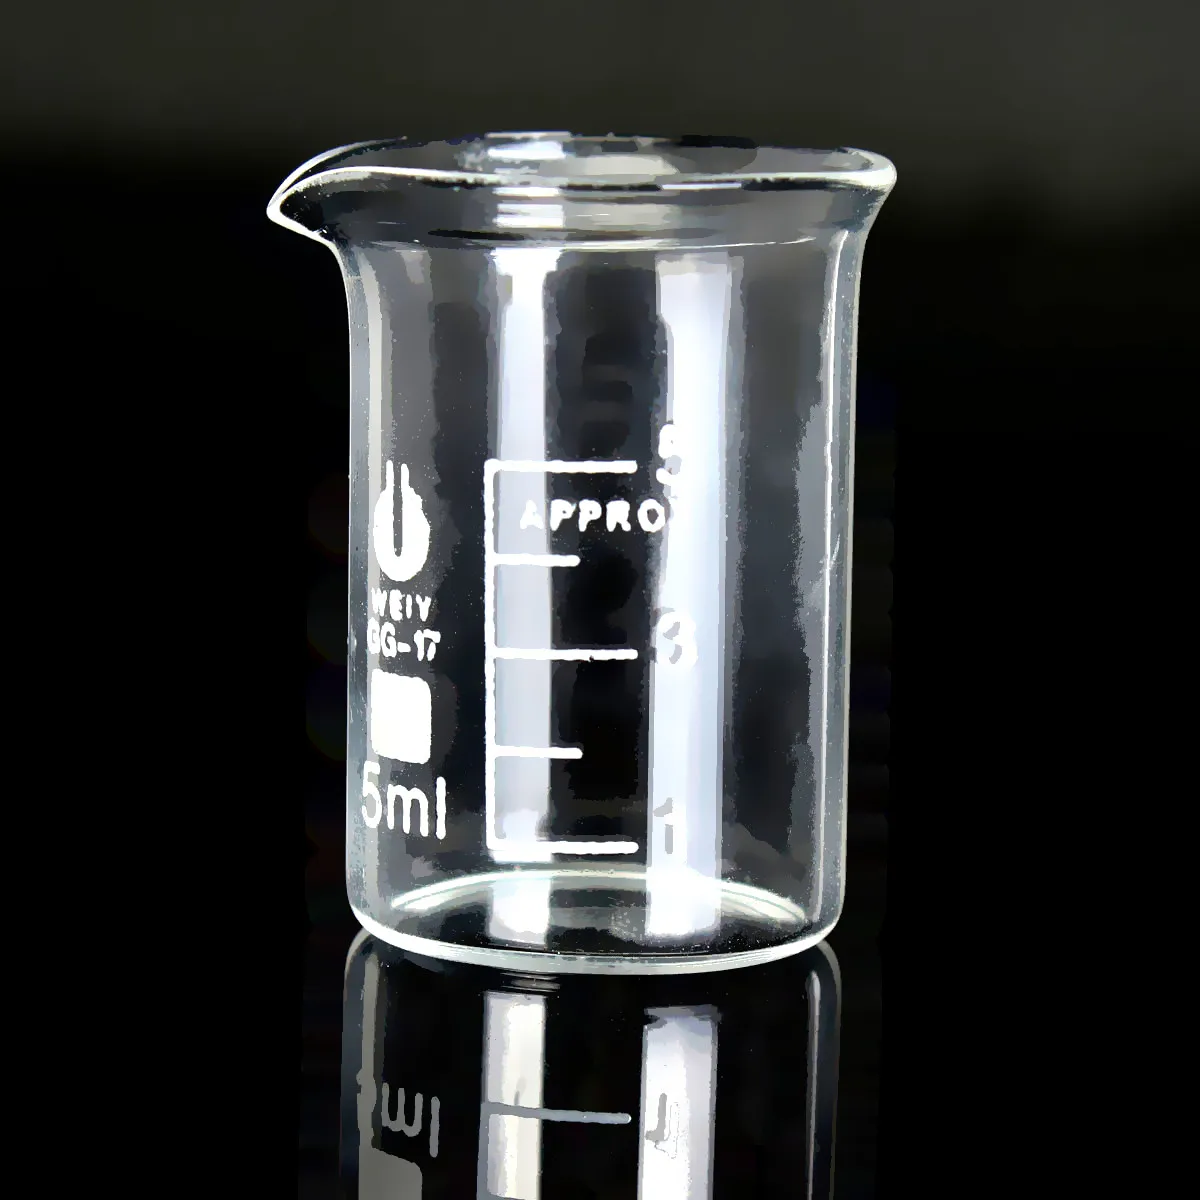 Kicute 1 шт. завышенная стоимость 5 мл химический лабораторный стакан боросиликатный мерный стакан прозрачные лабораторные принадлежности Школьные принадлежности